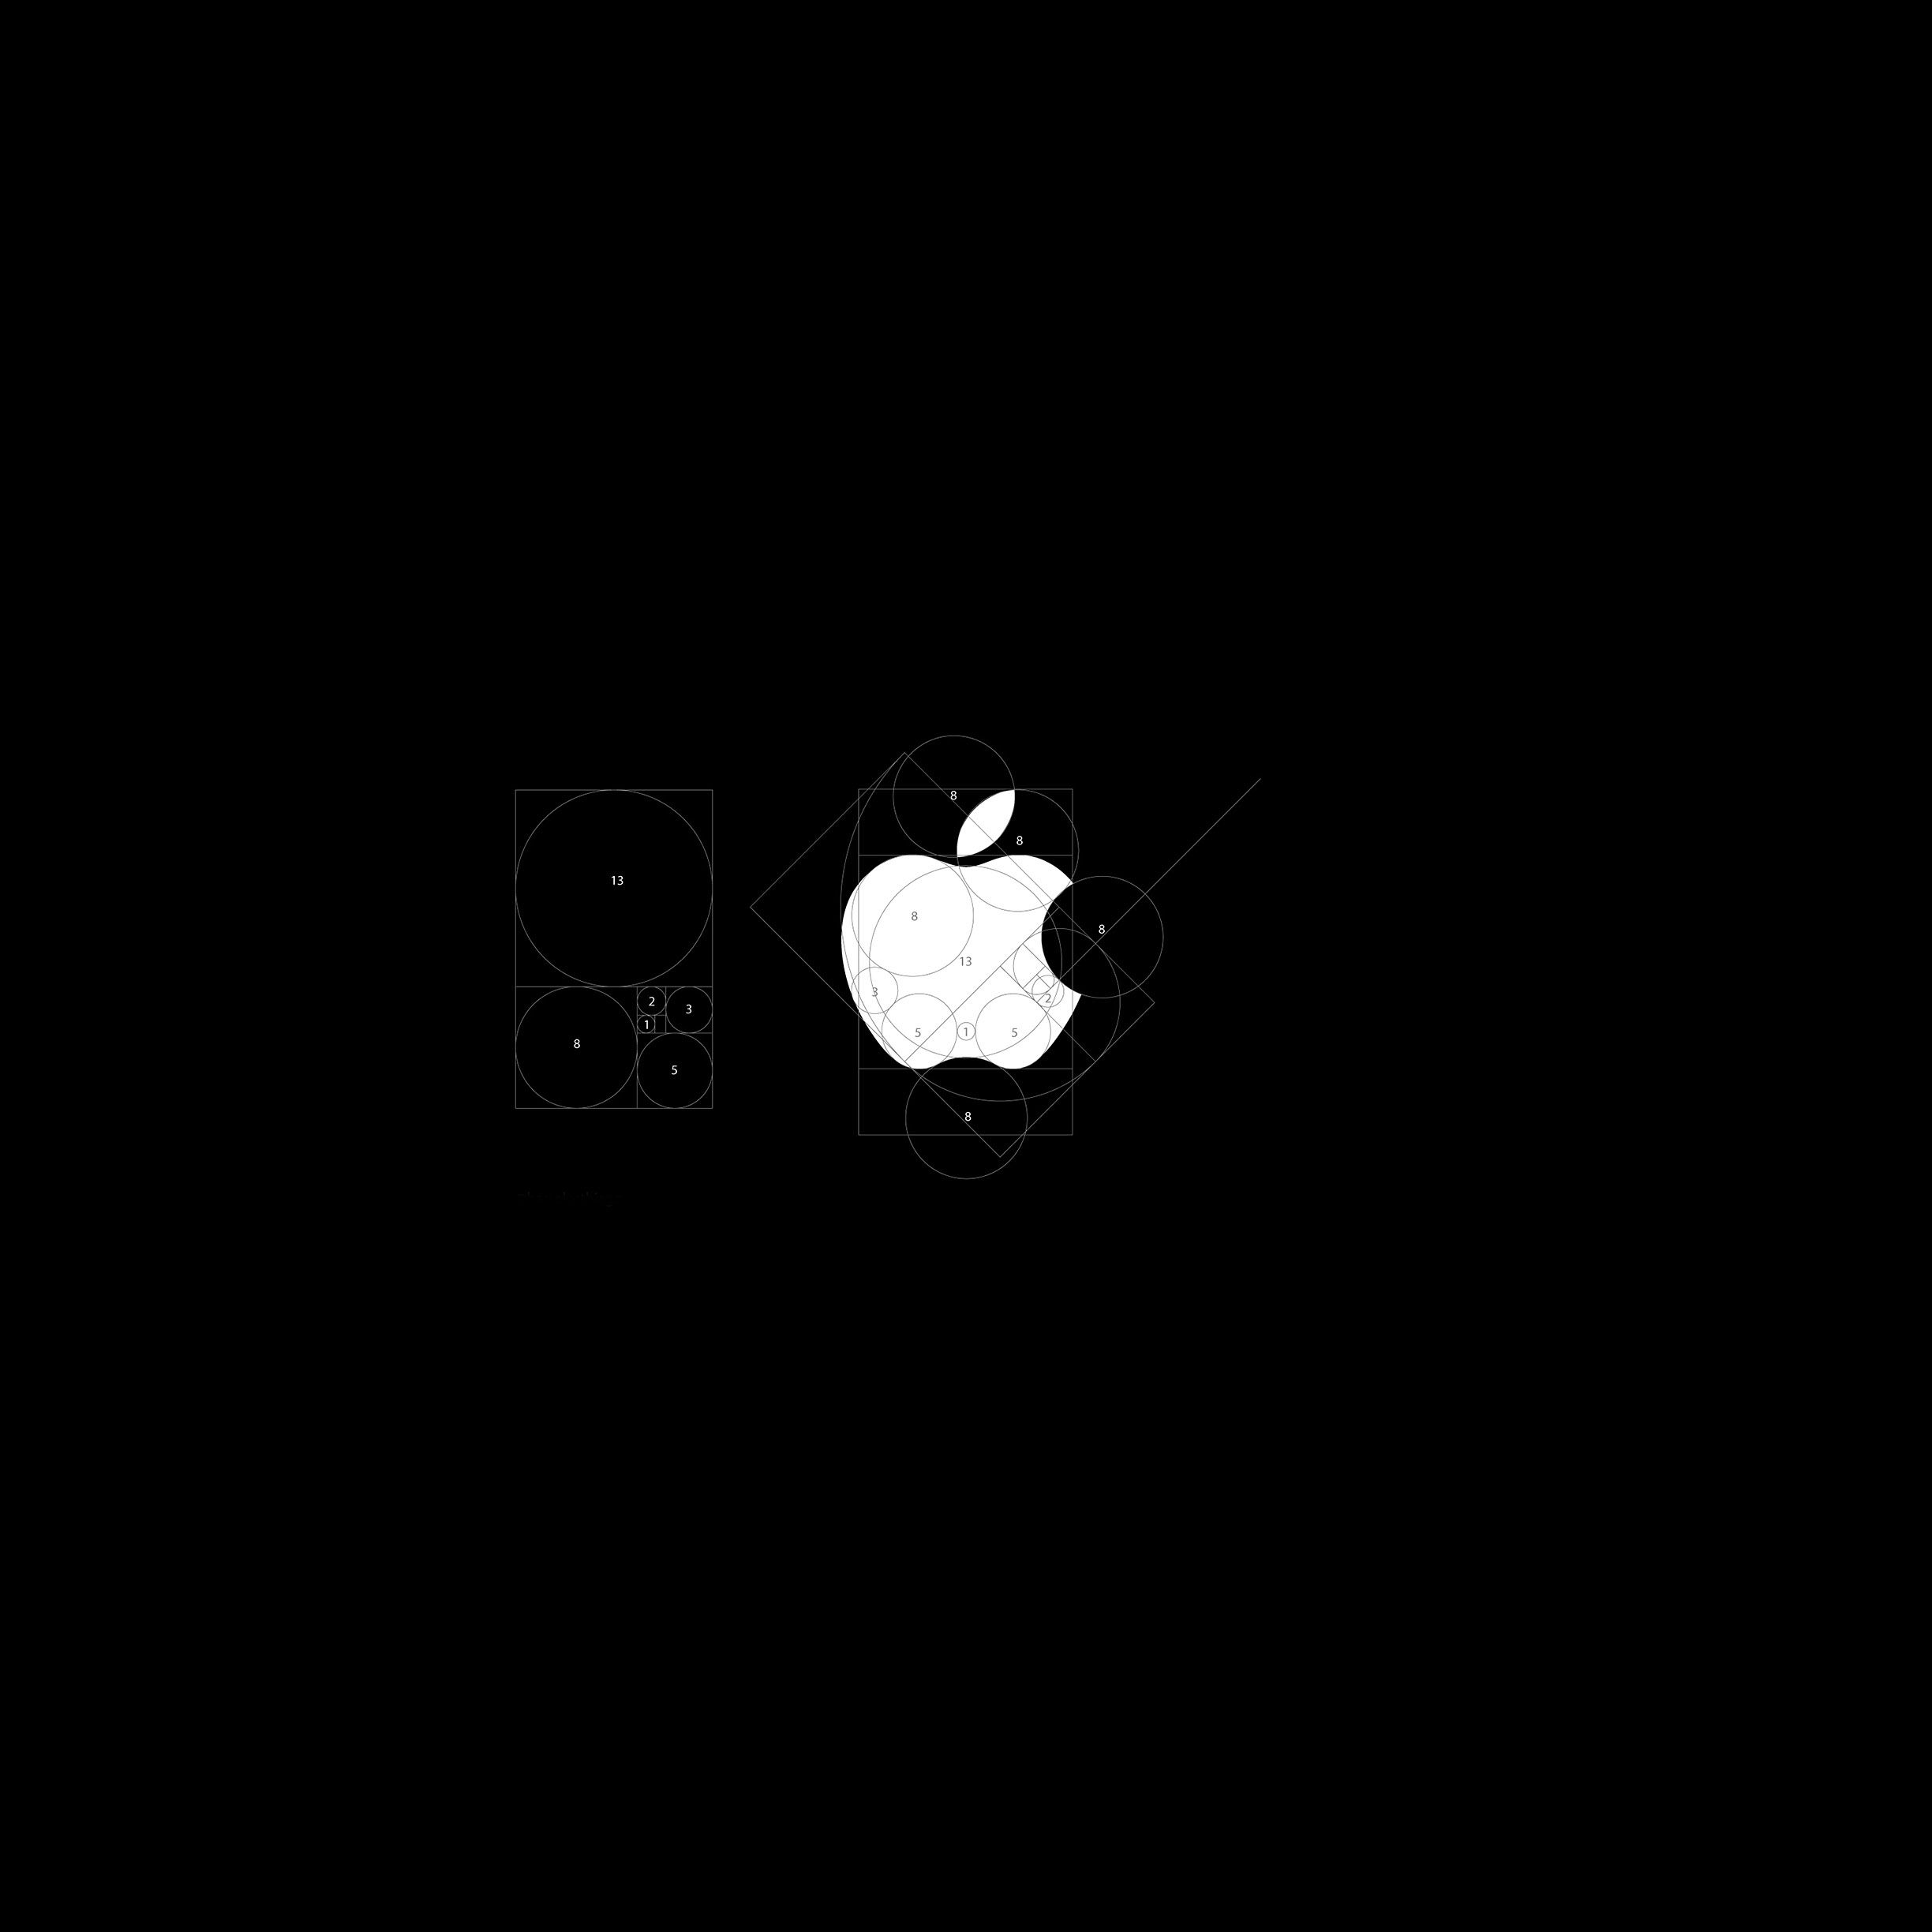 iOS 7用 iPad壁紙 01